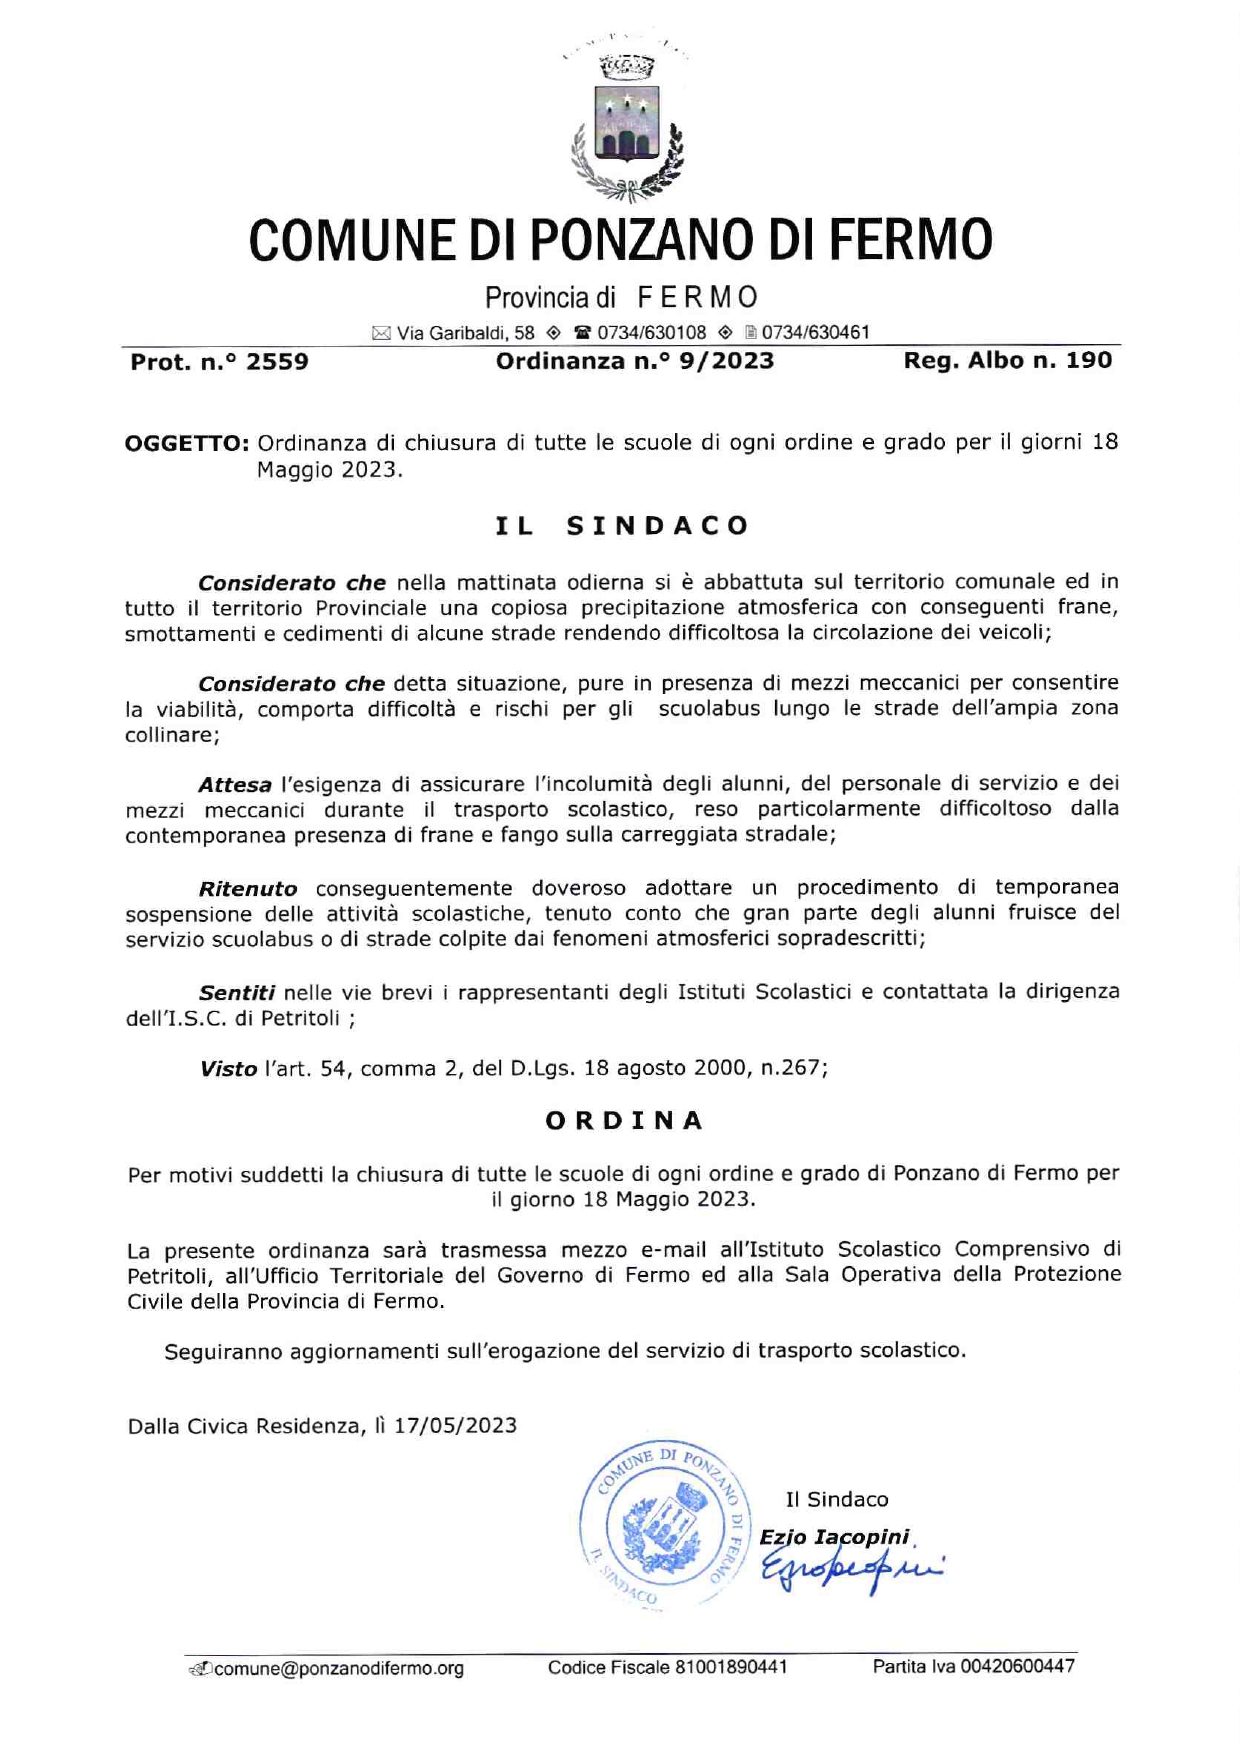 CHIUSURA SCUOLE DI OGNI ORDINE E GRADO E SOSPENSIONE SERVIZIO TRASPORTO SCOLASTICO - 18/05/2023